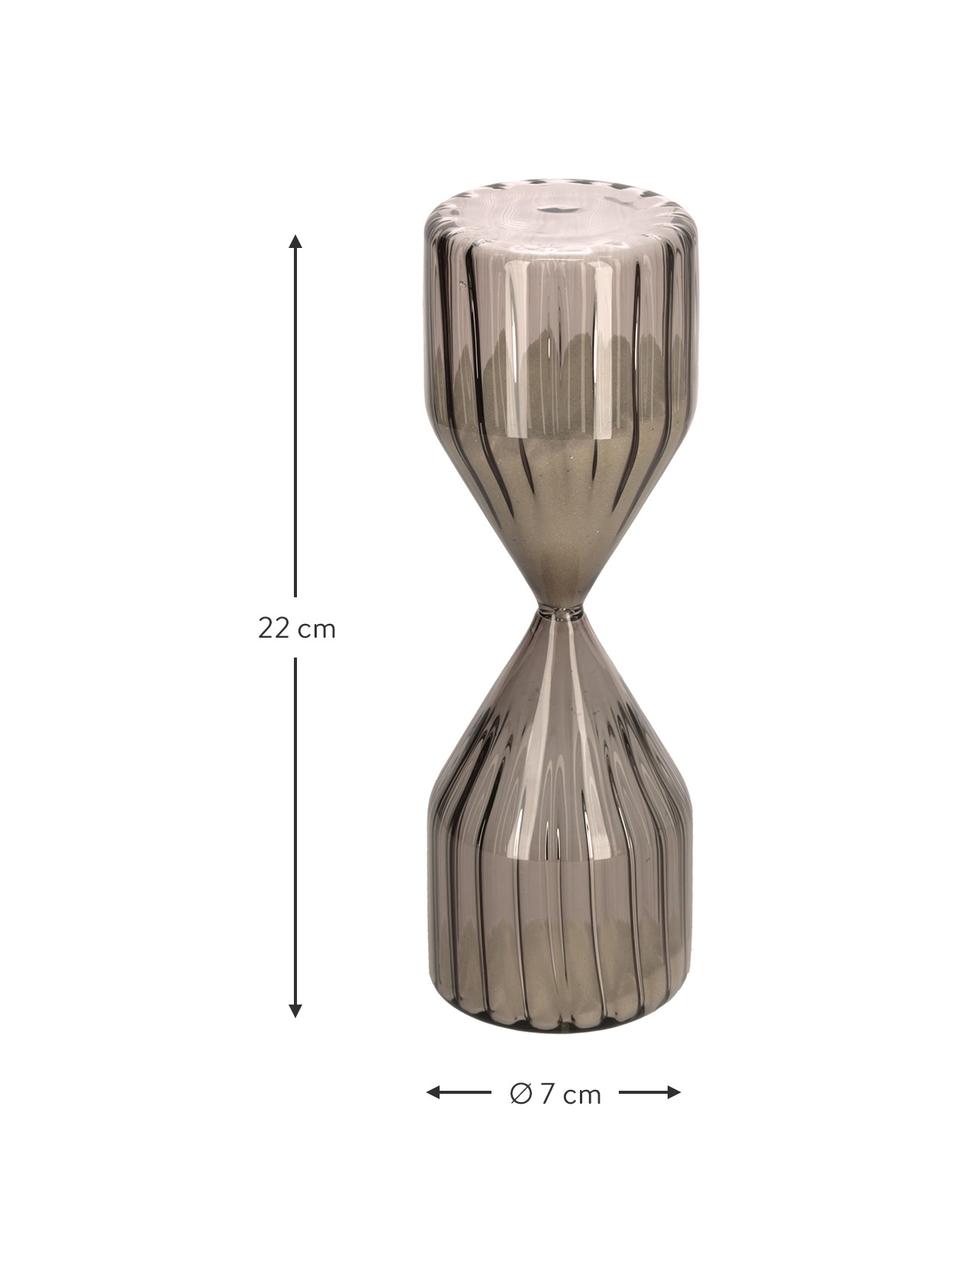 Sanduhr Gerty aus Glas, Braun, Ø 7 x H 22 cm